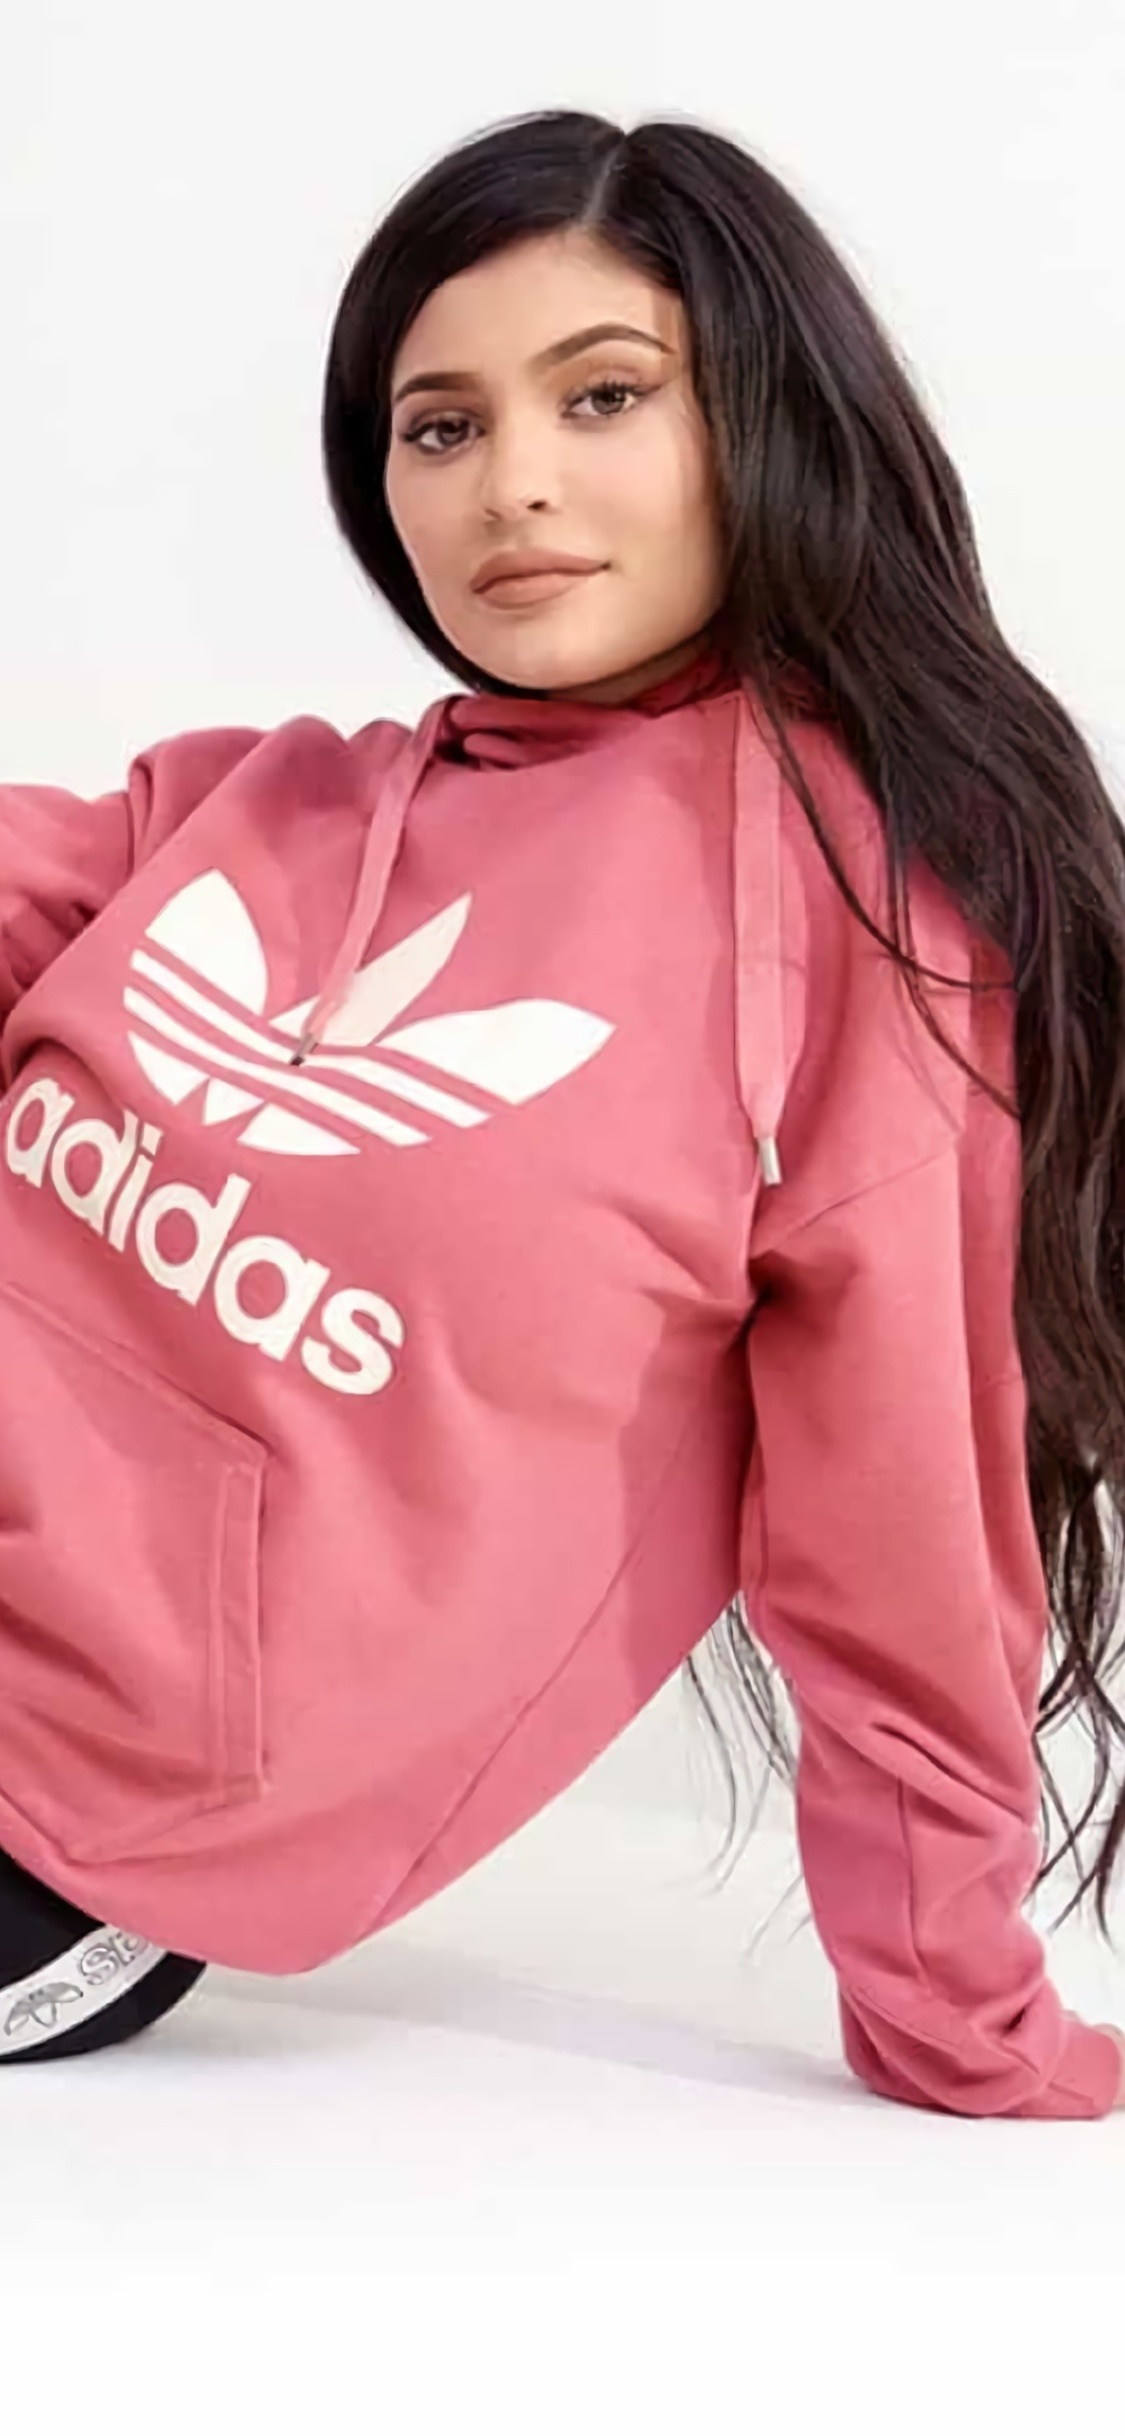 kylie jenner adidas pink hoodie